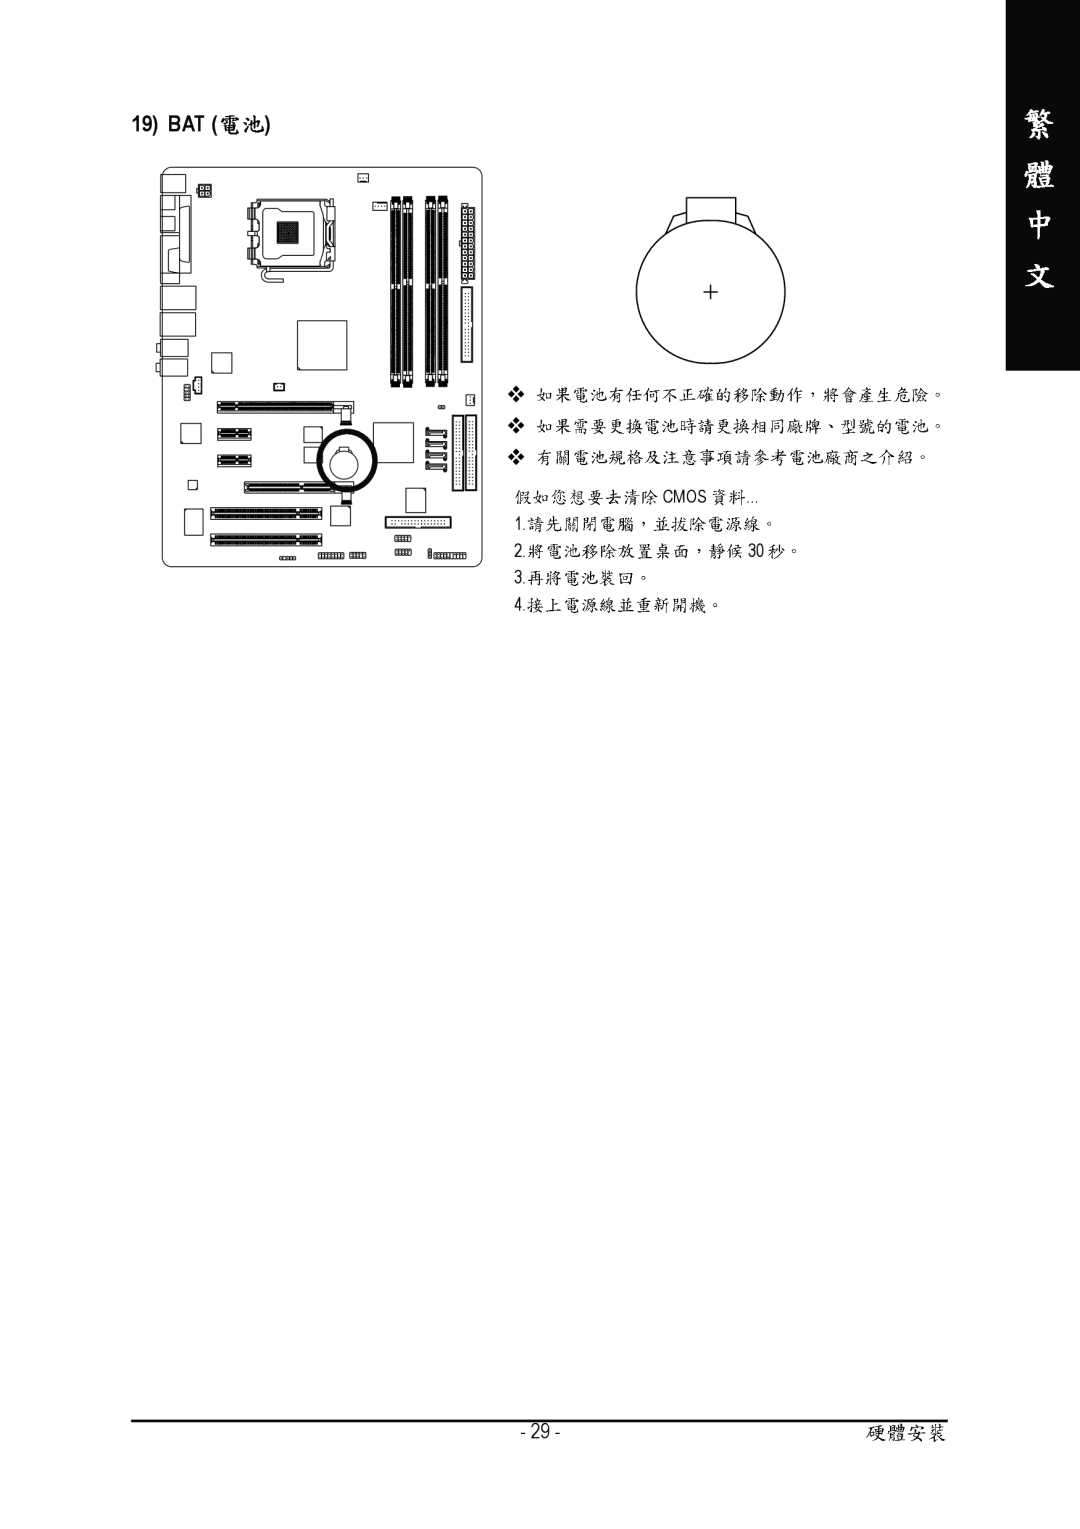 Gigabyte GA-8I915P manual 19 BAT, Cmos, 2. 30 3 